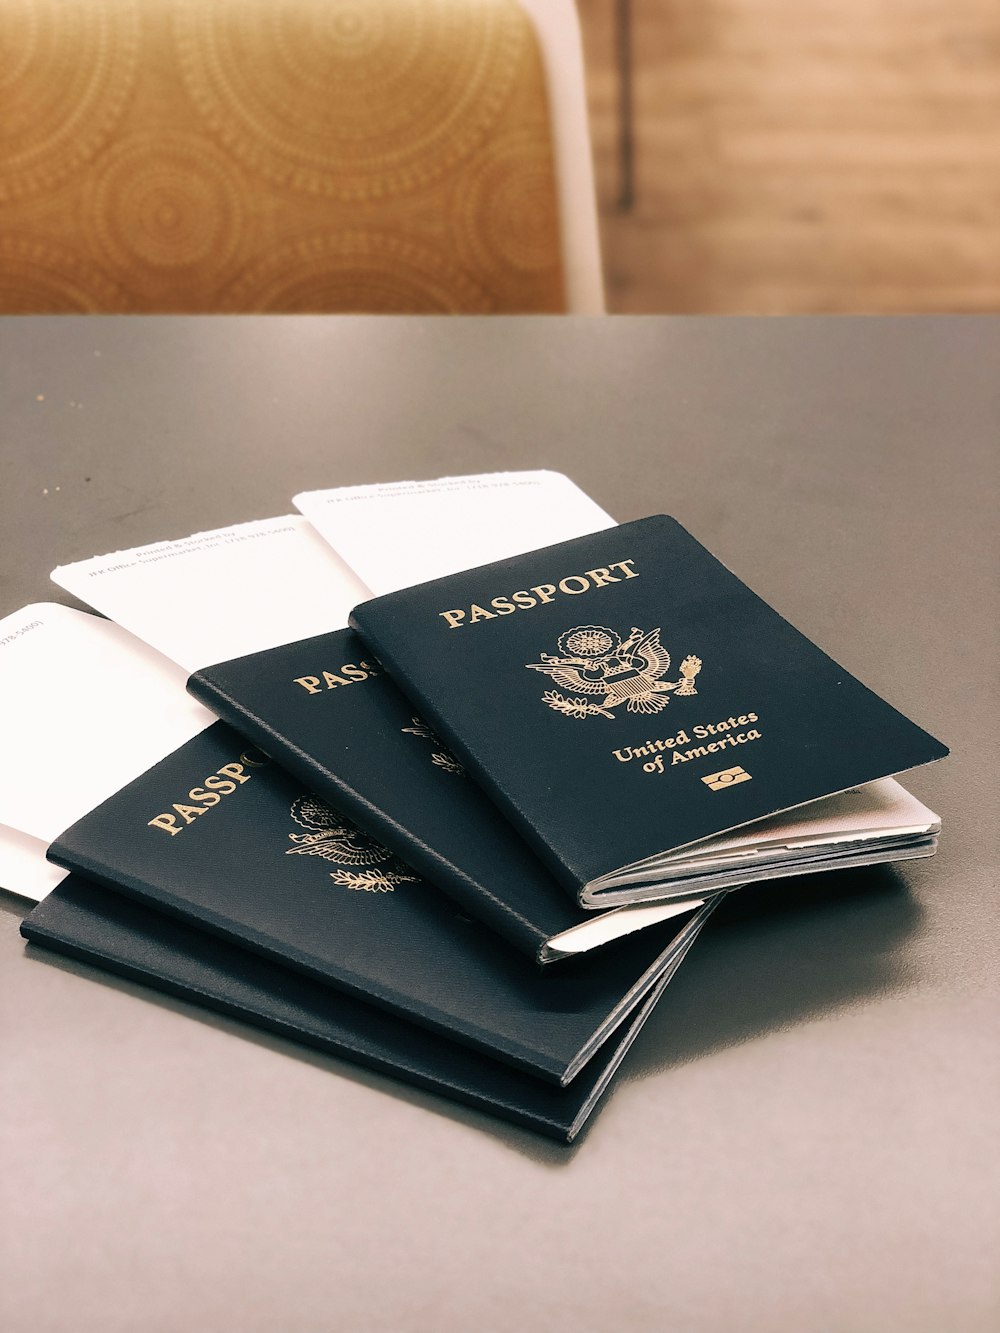 quattro passaporti verdi